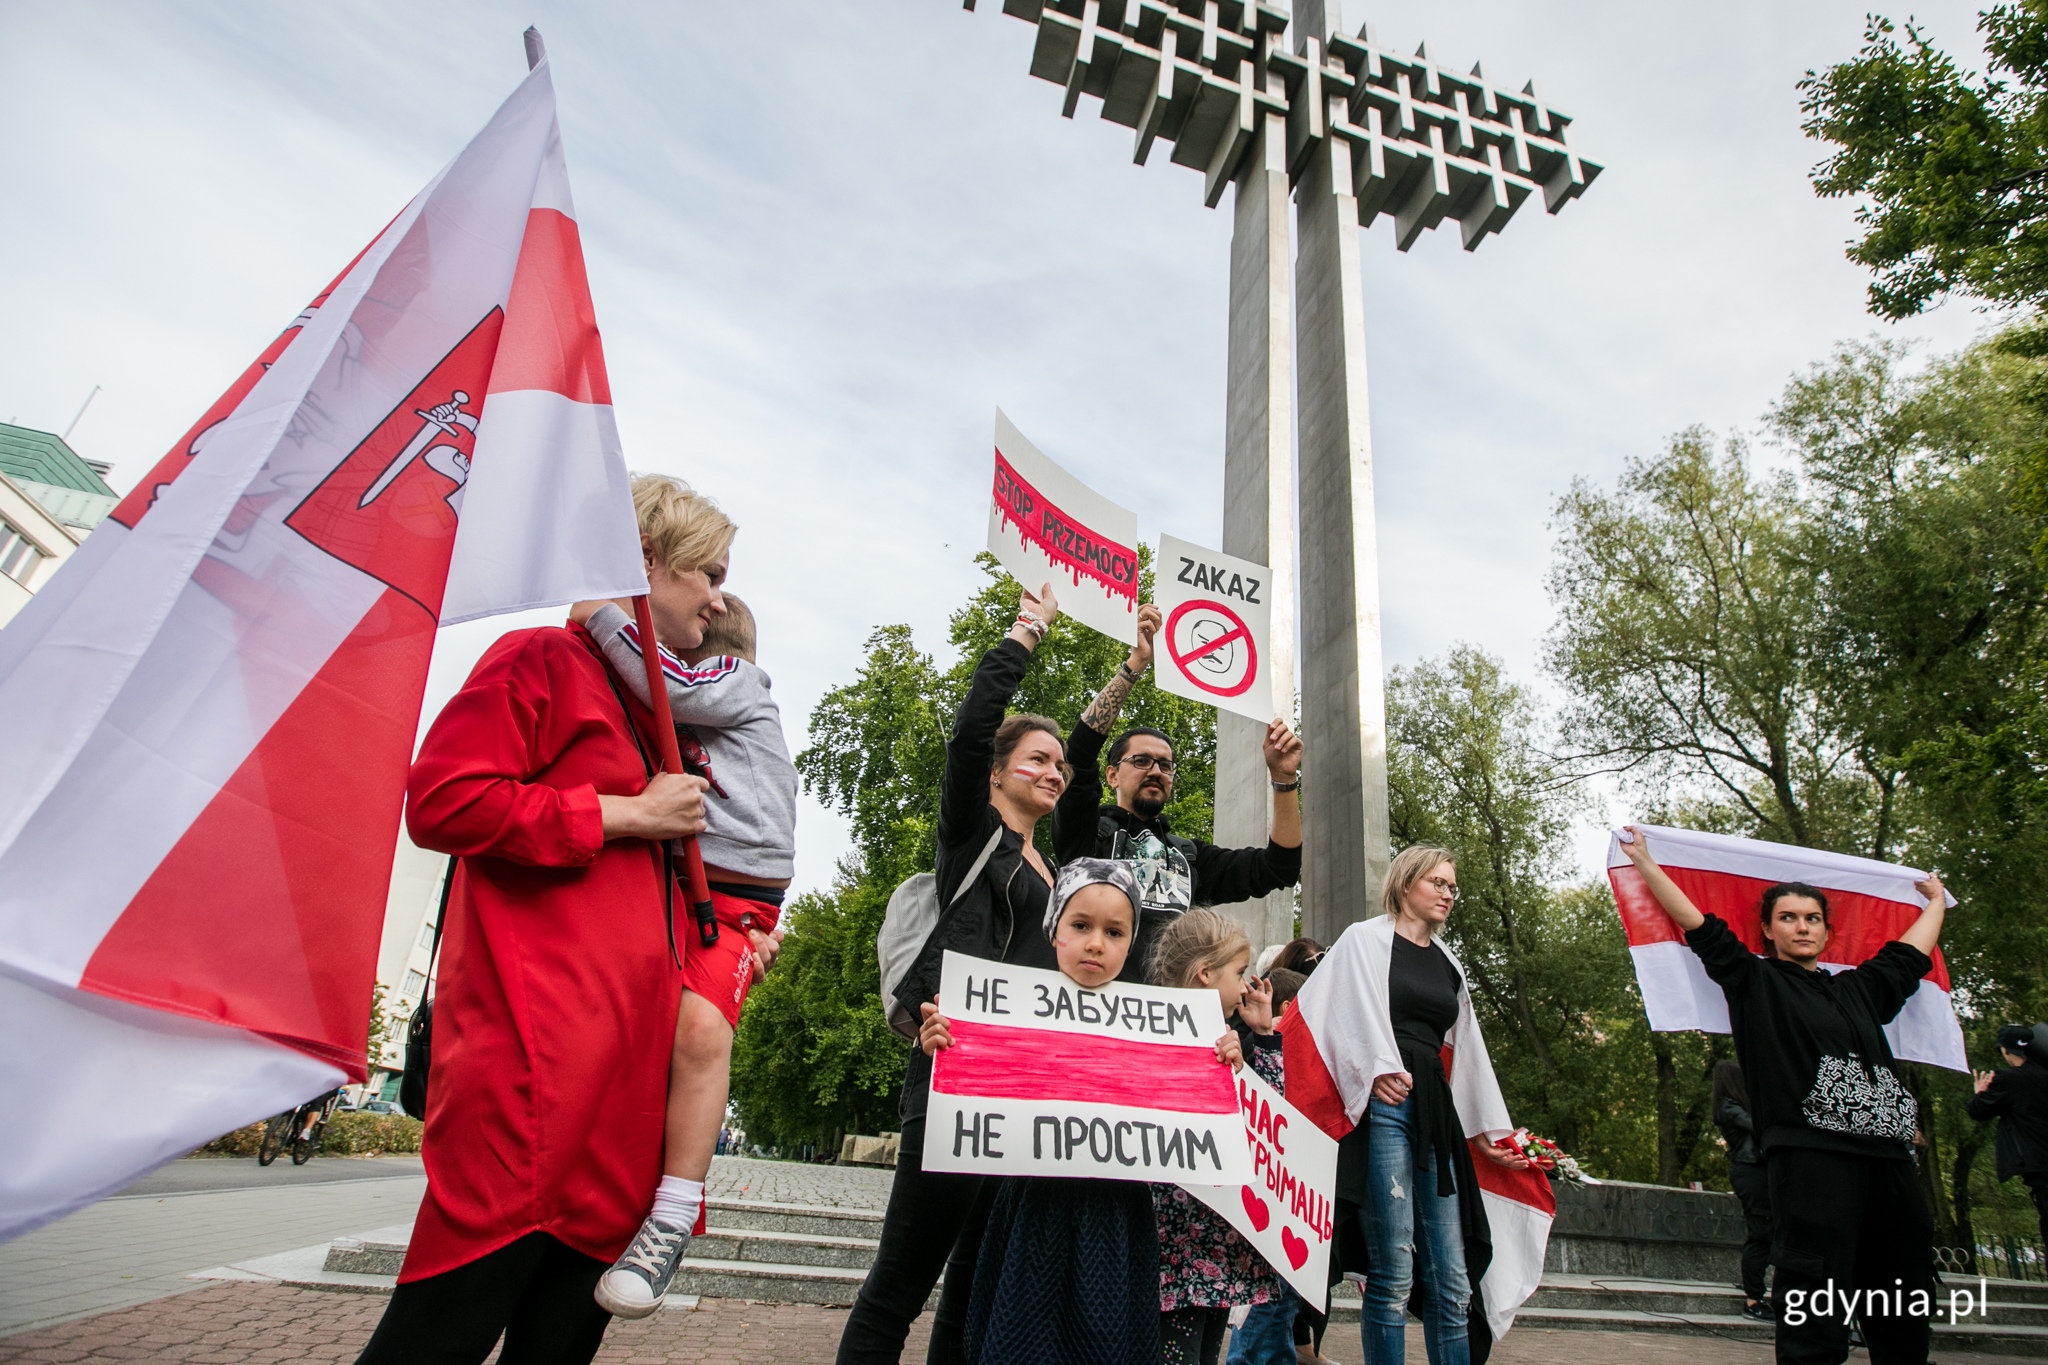 Akacja performatywna przeciw przemocy reżimu Aleksandra Łukaszenki w Gdyni, wrzesień 2020. fot. Karol Stańczak